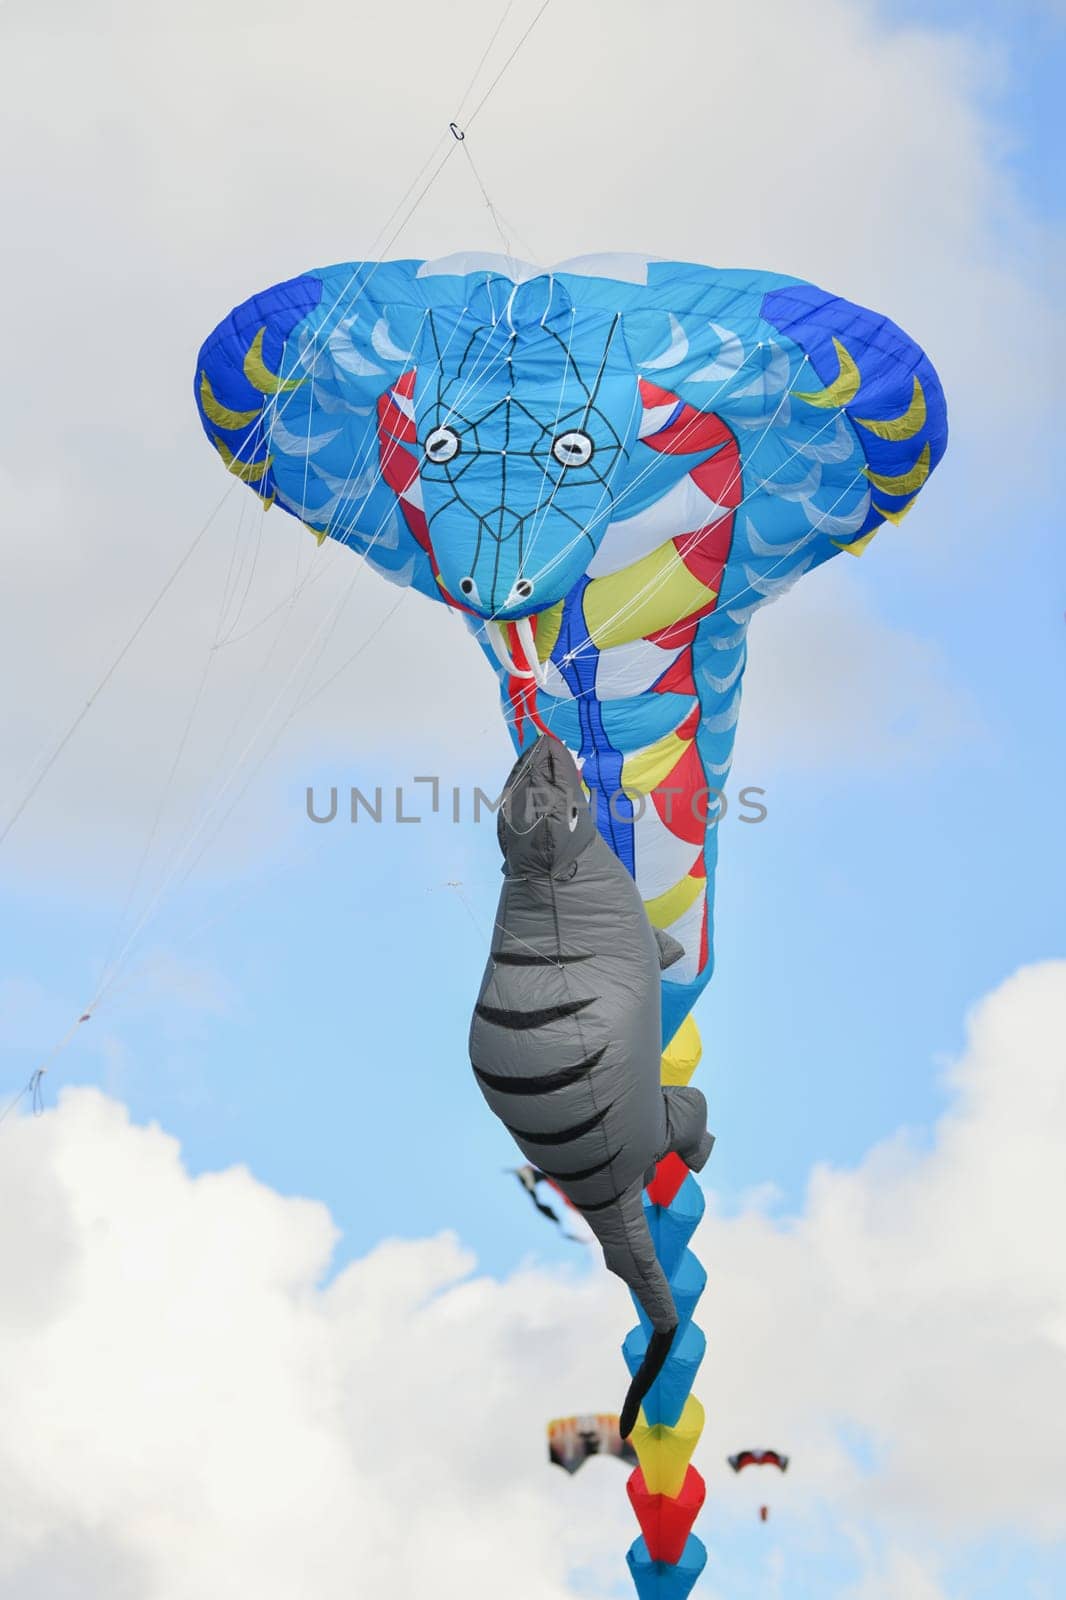 Kite festival. Kite cobra in the sky at the beach of Atlantic ocean